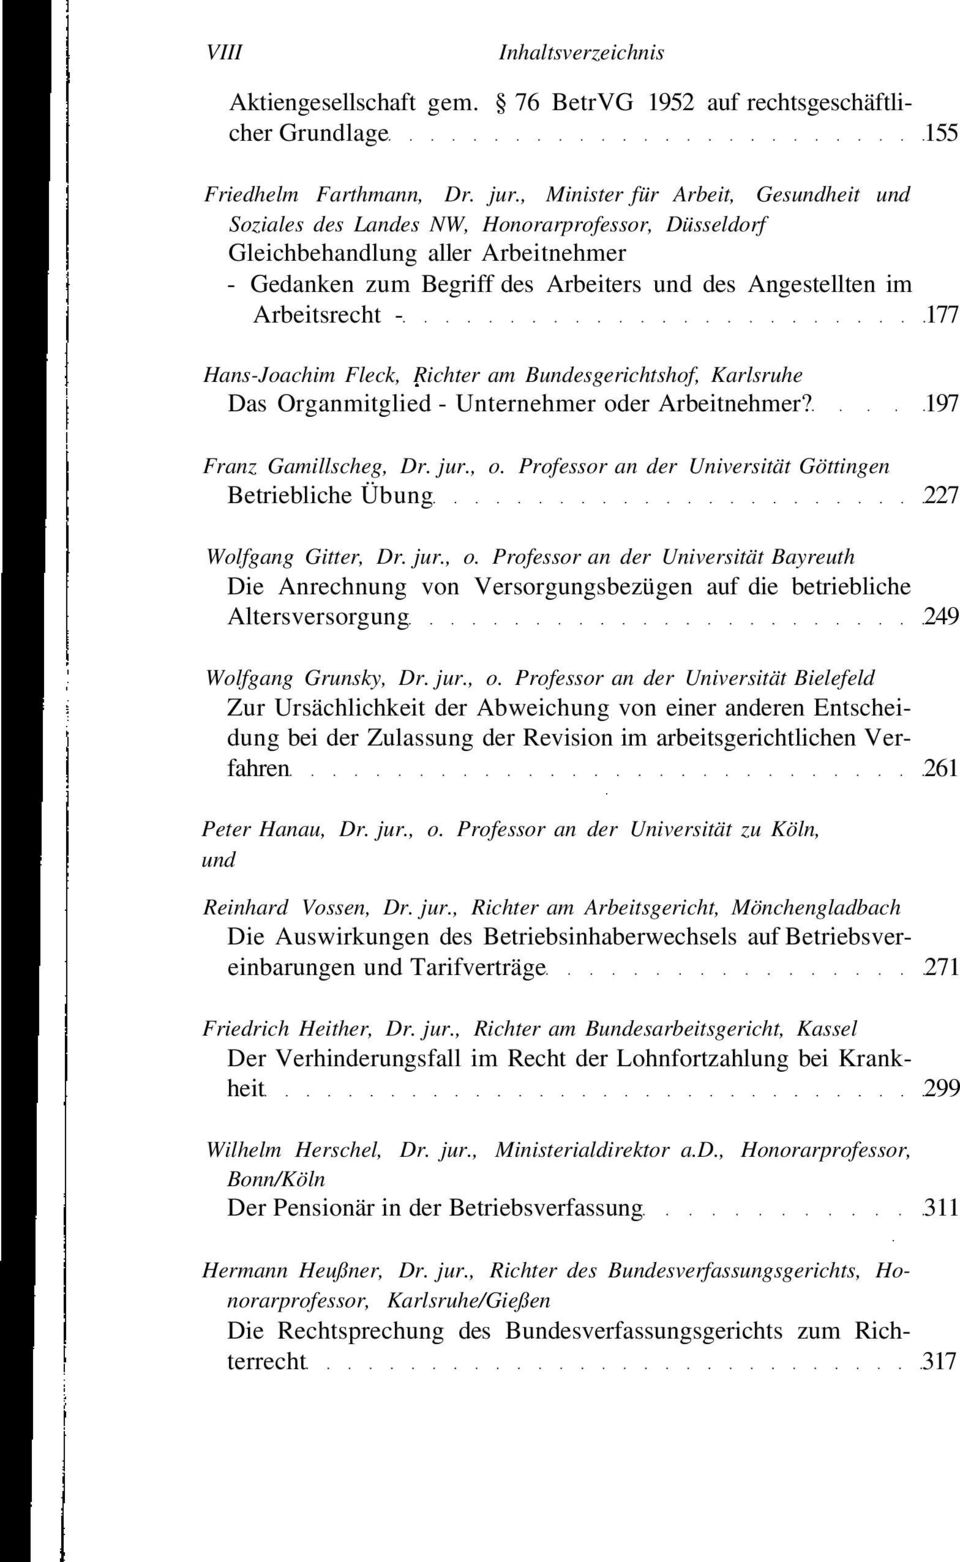 Arbeitsrecht - 177 Hans-Joachim Fleck, Richter am Bundesgerichtshof, Karlsruhe Das Organmitglied - Unternehmer oder Arbeitnehmer? 197 Franz Gamillscheg, Dr. jur., o.